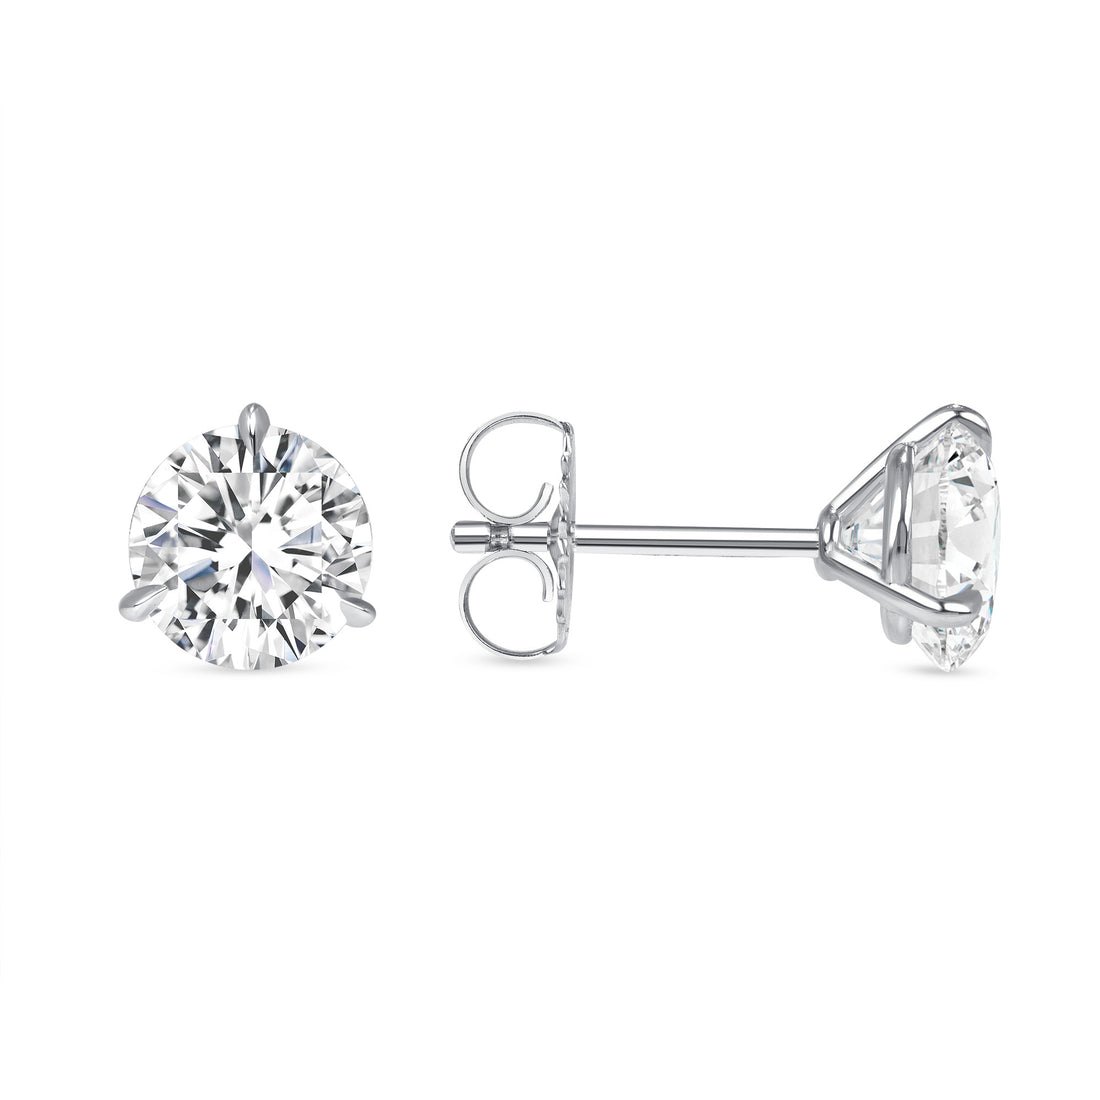 3CT Martini Diamond Stud Earrings